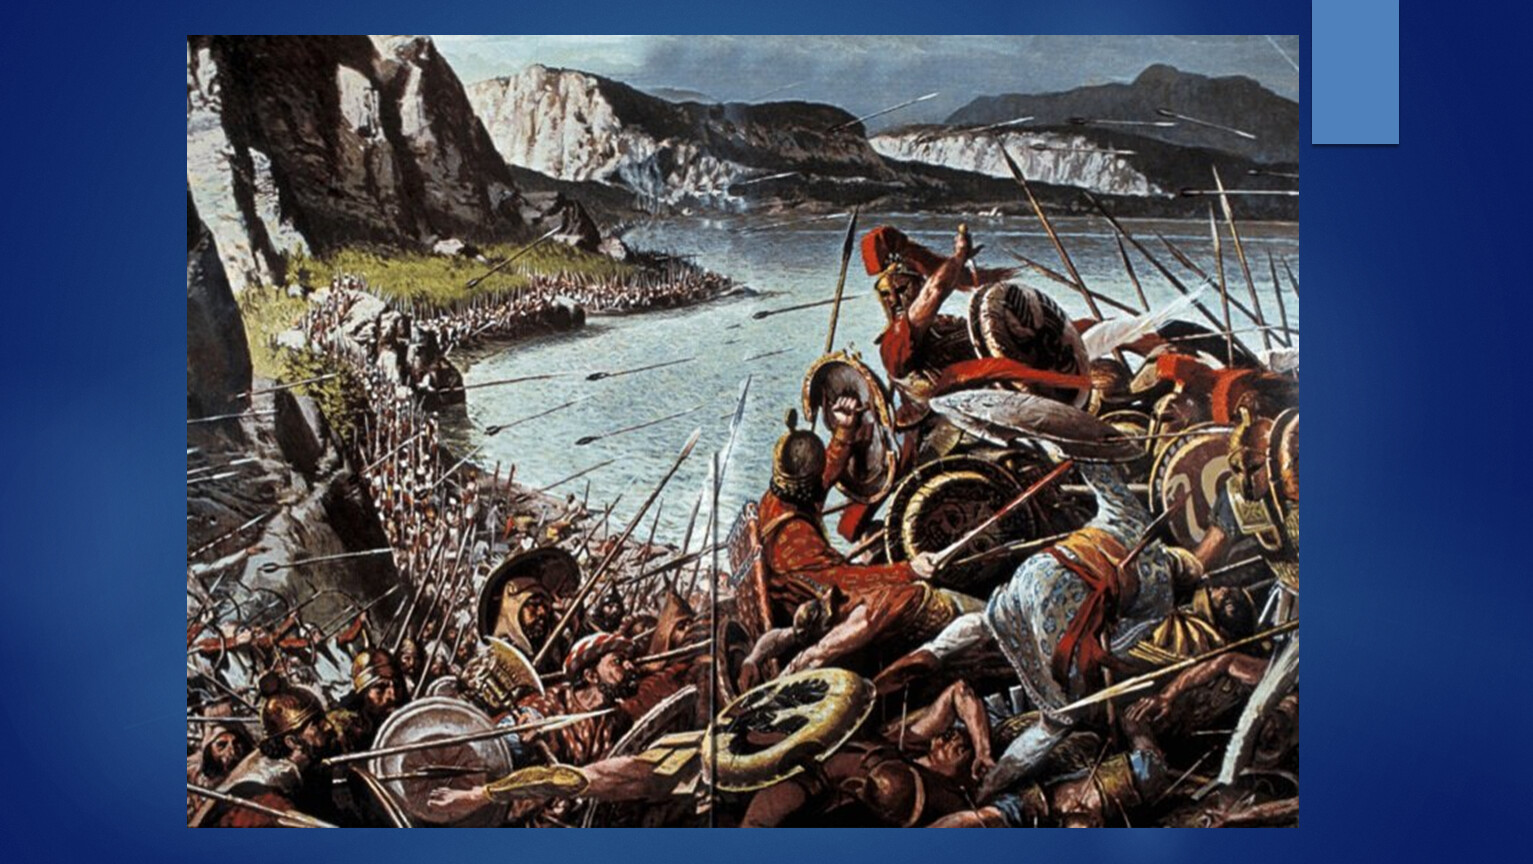 Фото battles. Фермопильское ущелье 300 спартанцев. 300 Спартанцев марафонская битва. 300 Спартанцев битва в ущелье. Бой в Фермопильском ущелье.